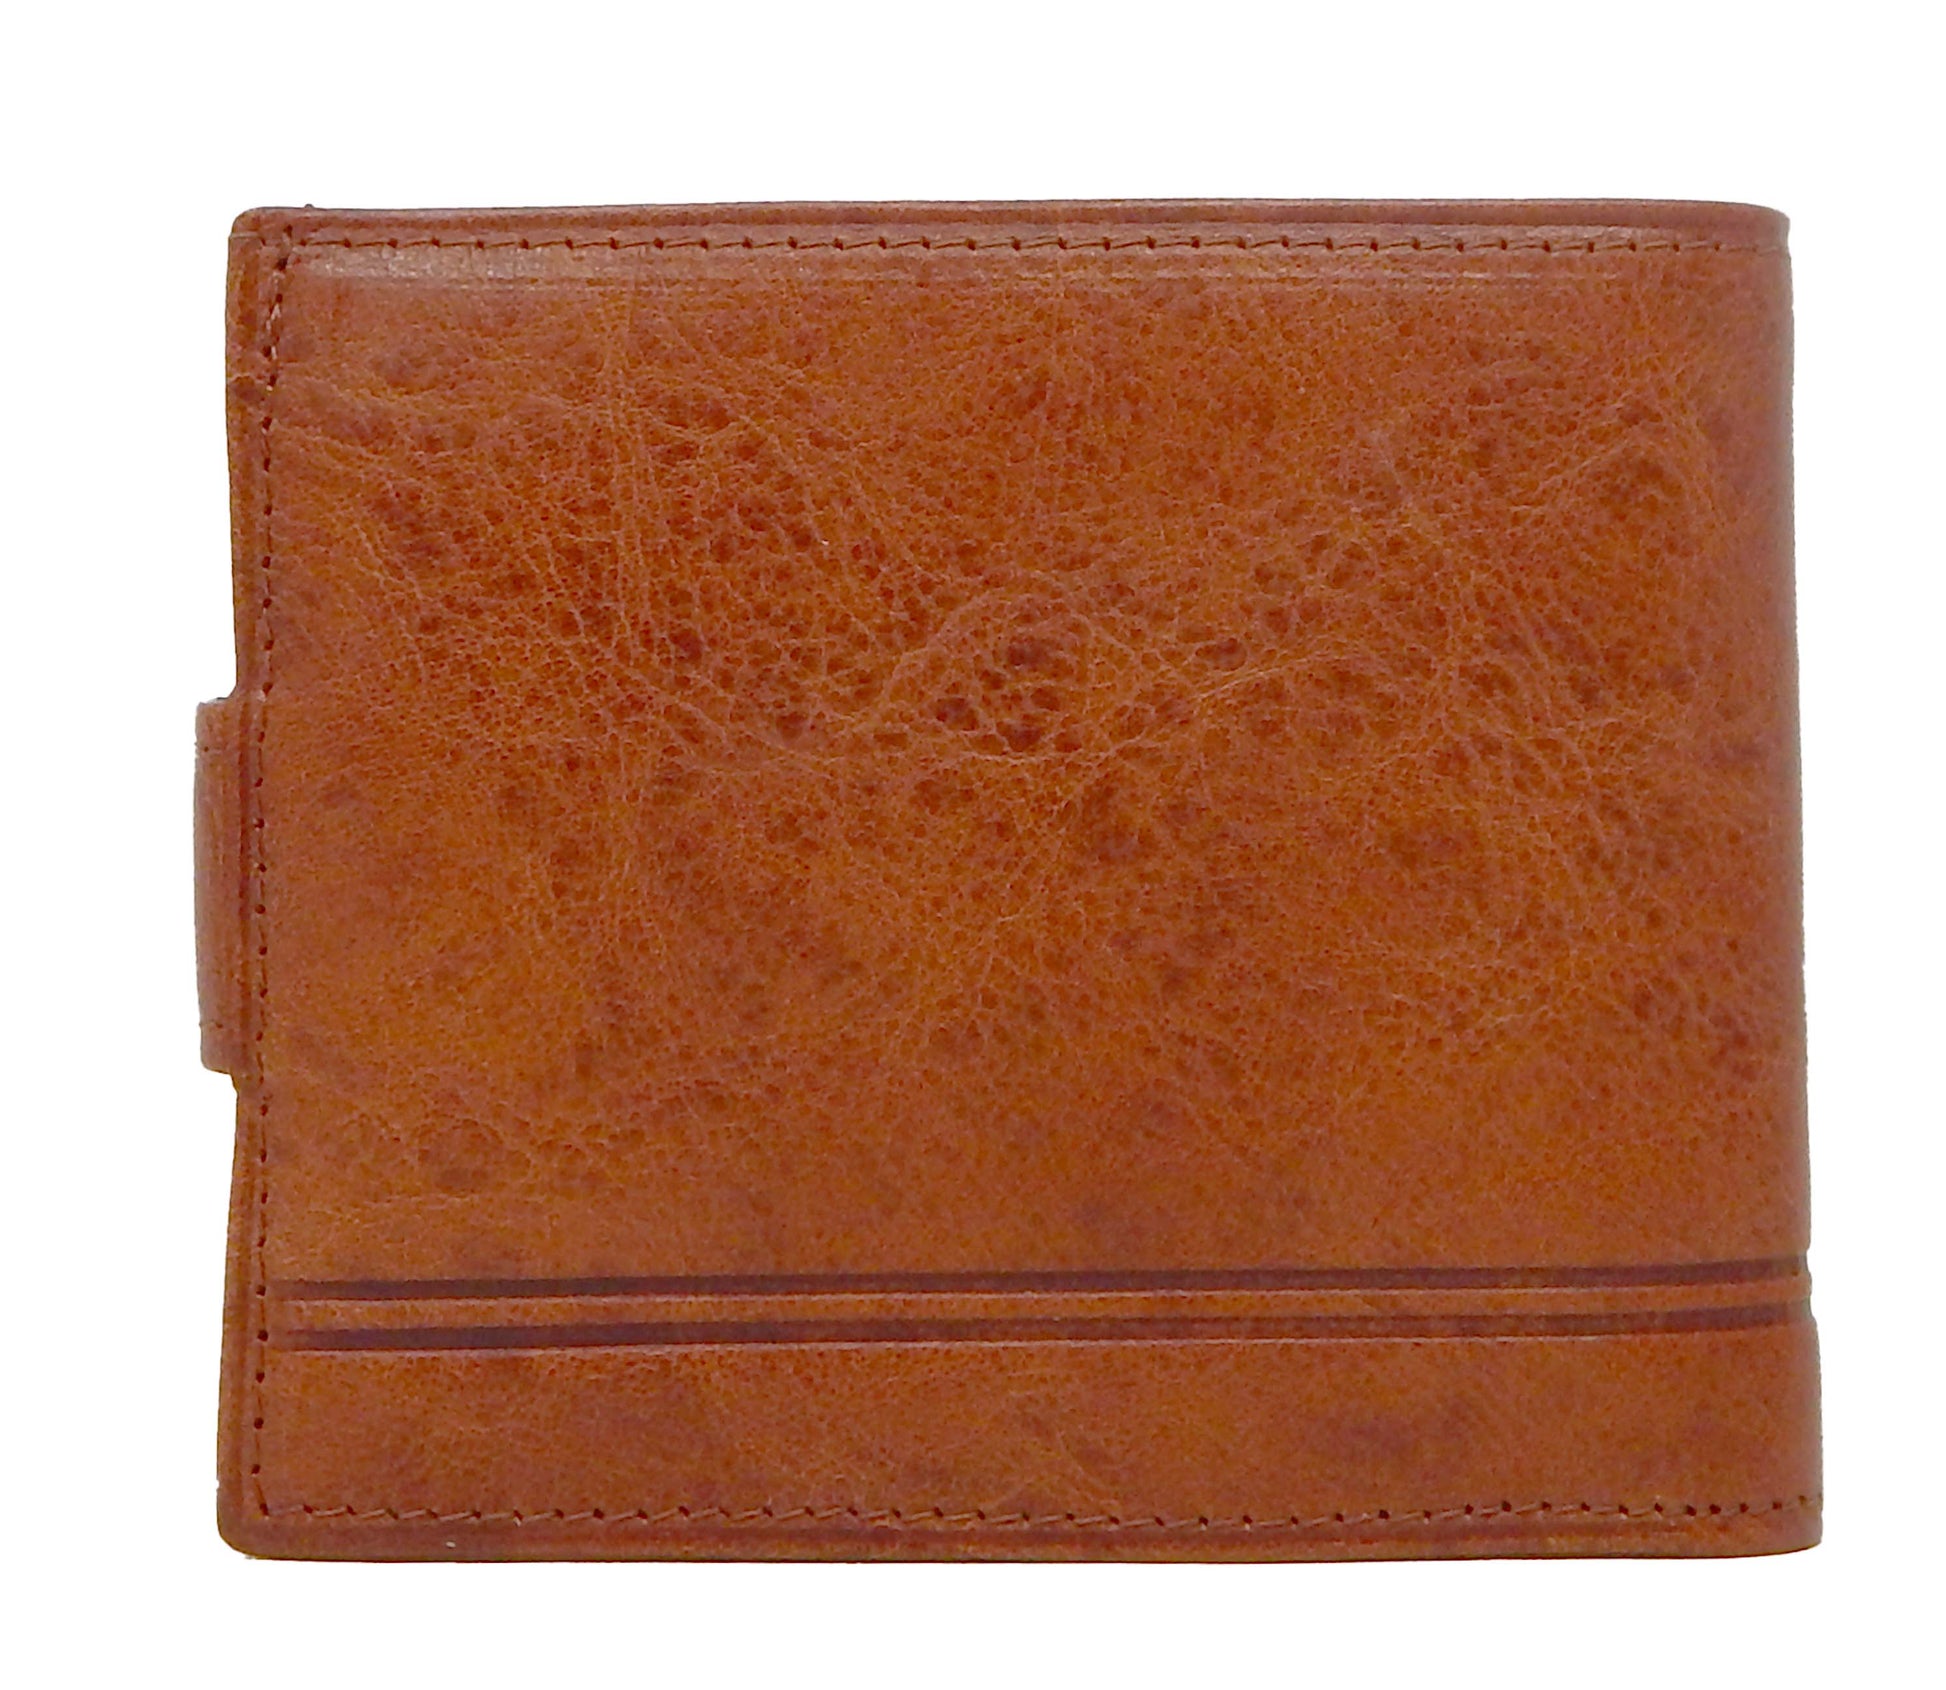 Cavalinho Men's Trifold Leather Wallet - SaddleBrown - 28610503.13.99_3